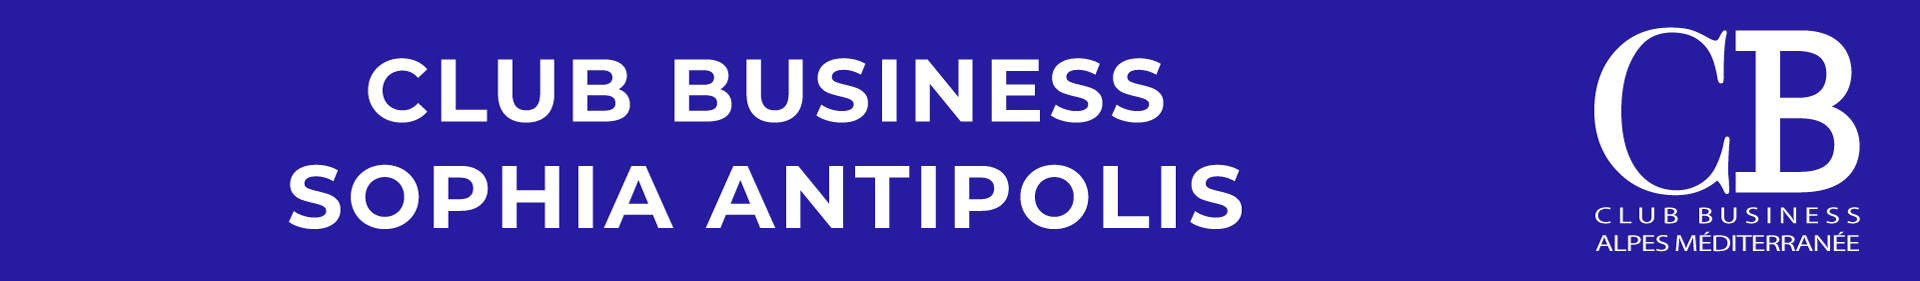 logo club business sophia antipolis